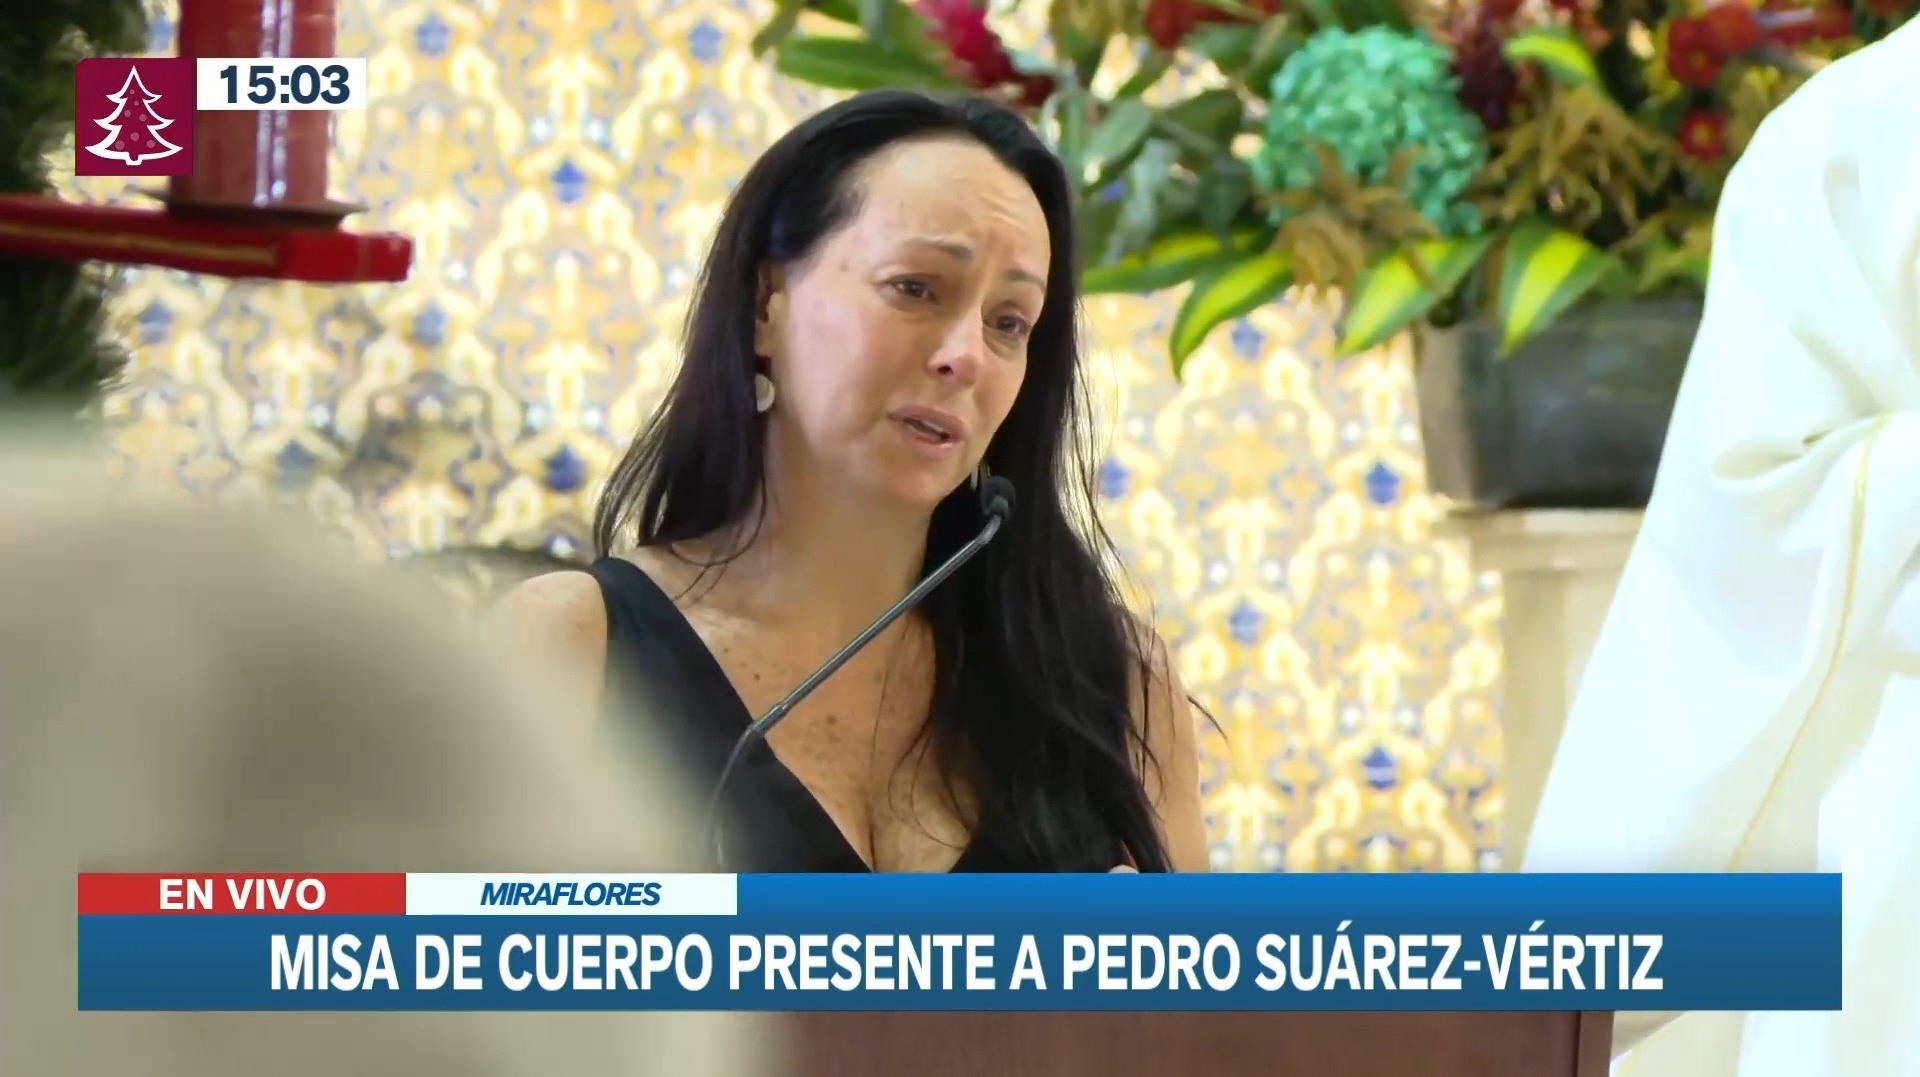 Cynthia Martínez y sus emotivas palabras durante misa de Pedro Suárez Vértiz. Fuente: Canal N